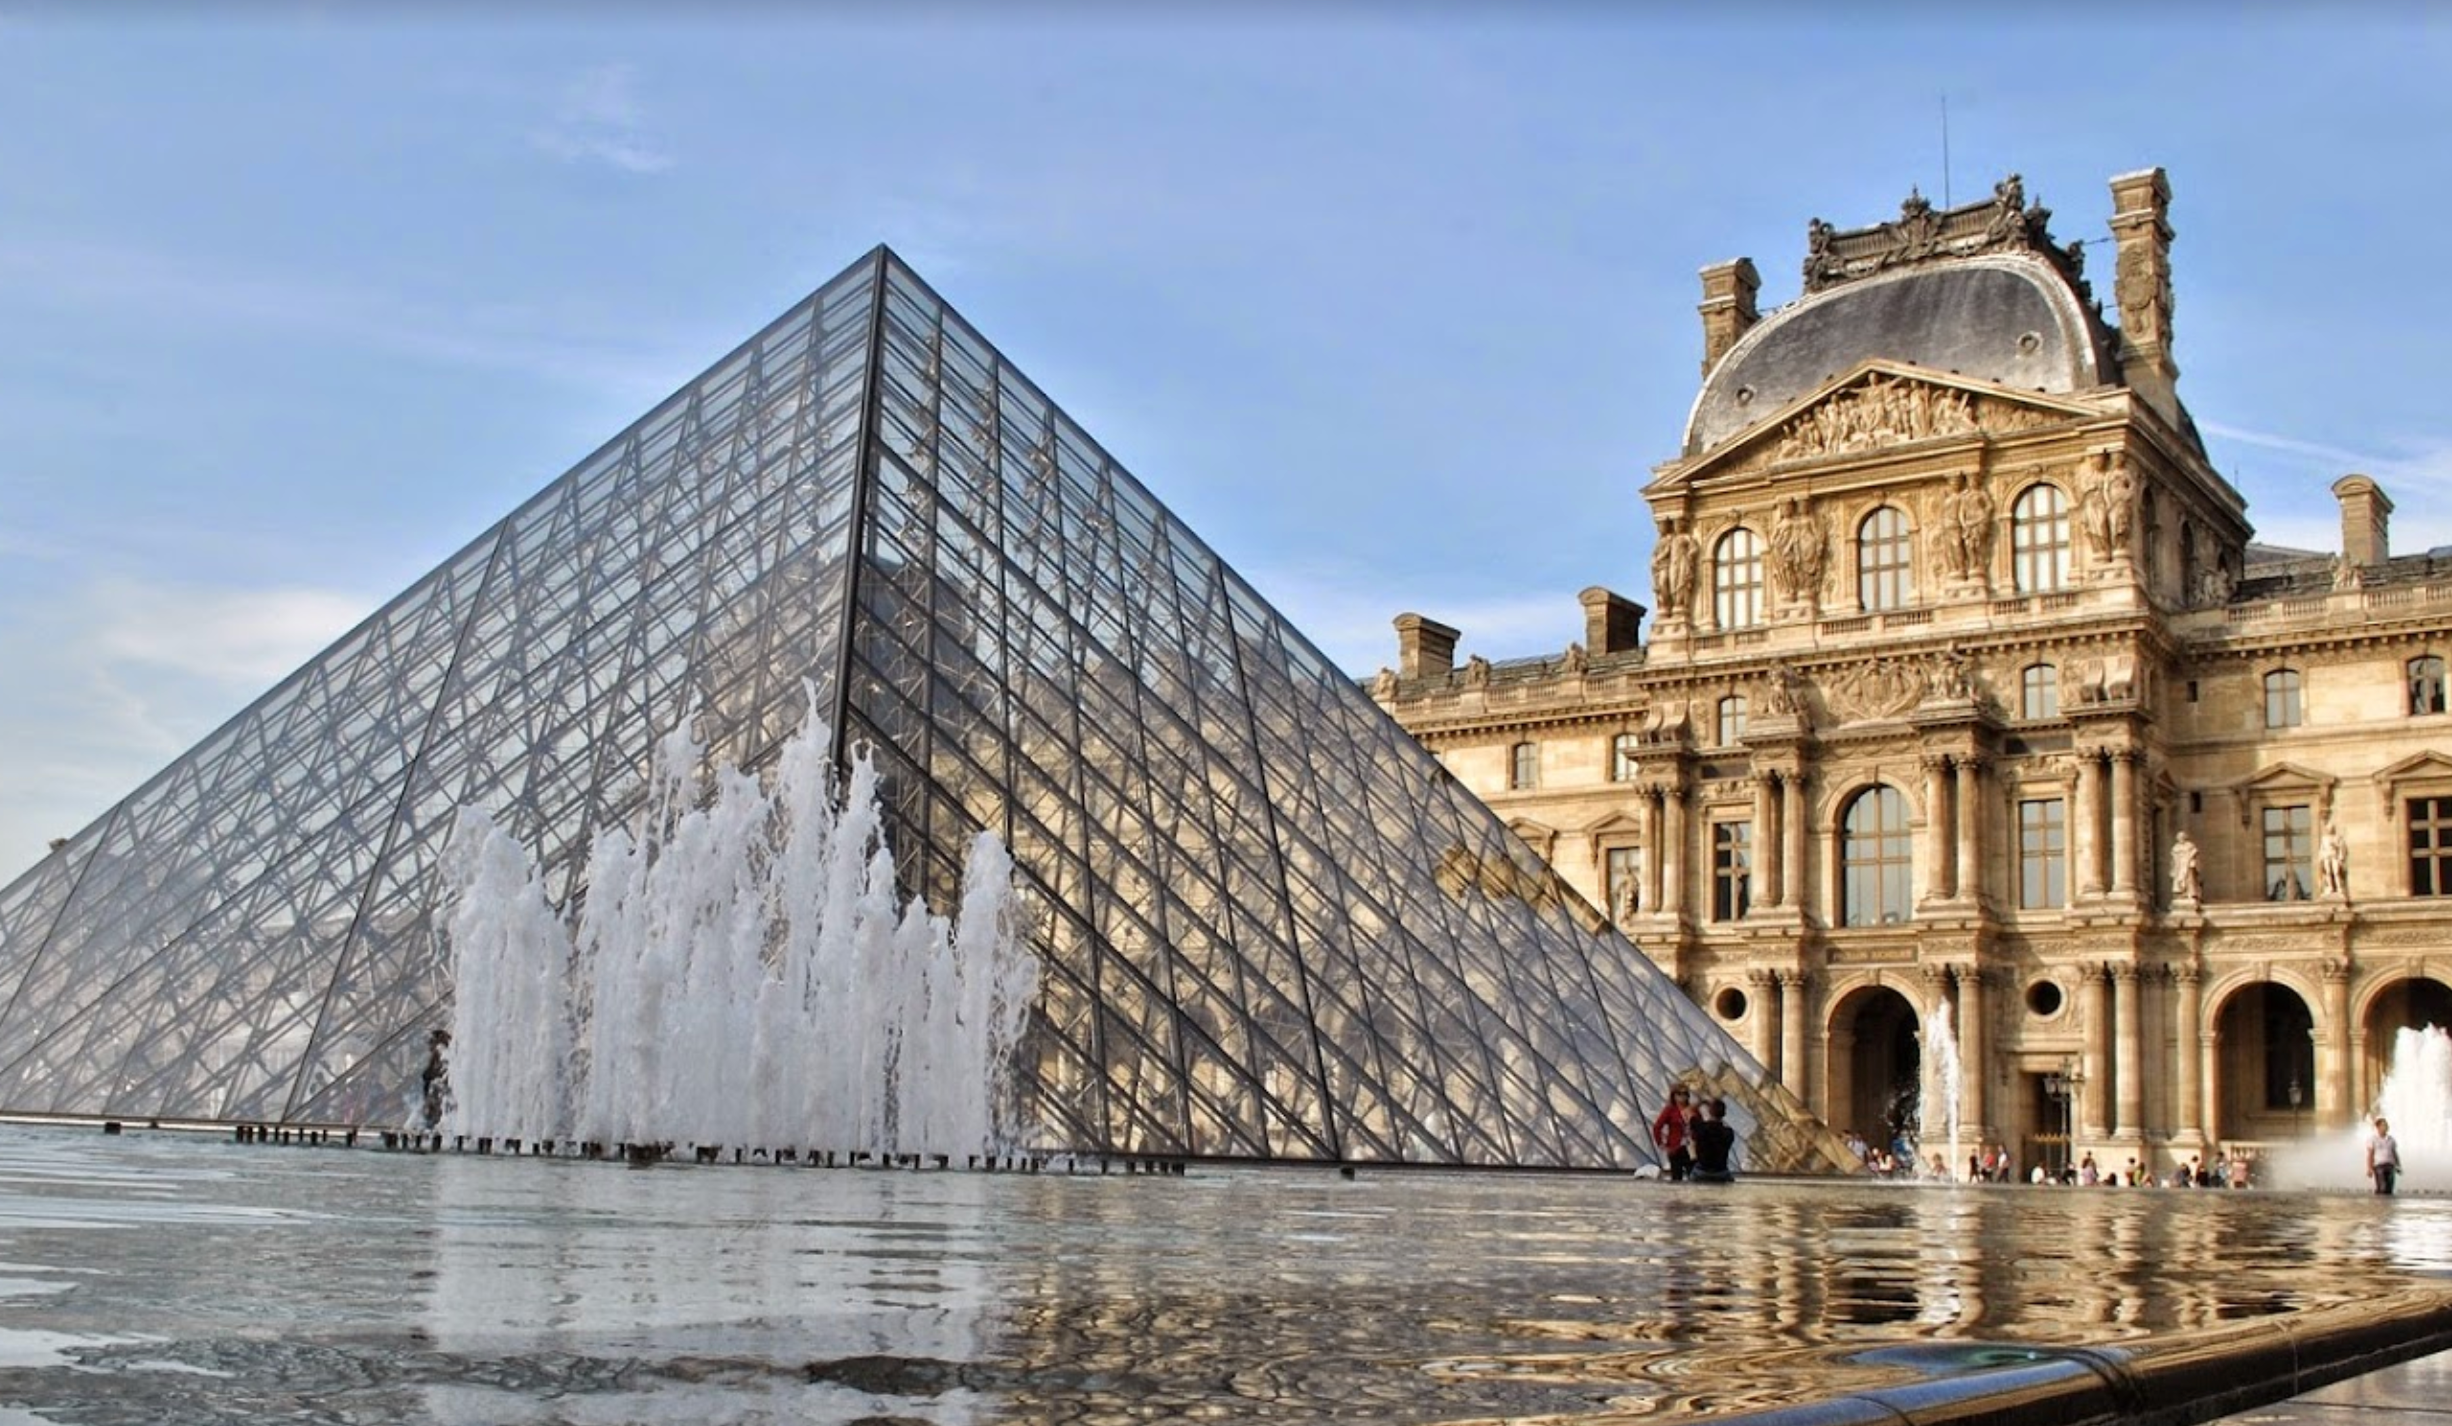 Louvre Museum (Musée du Louvre)